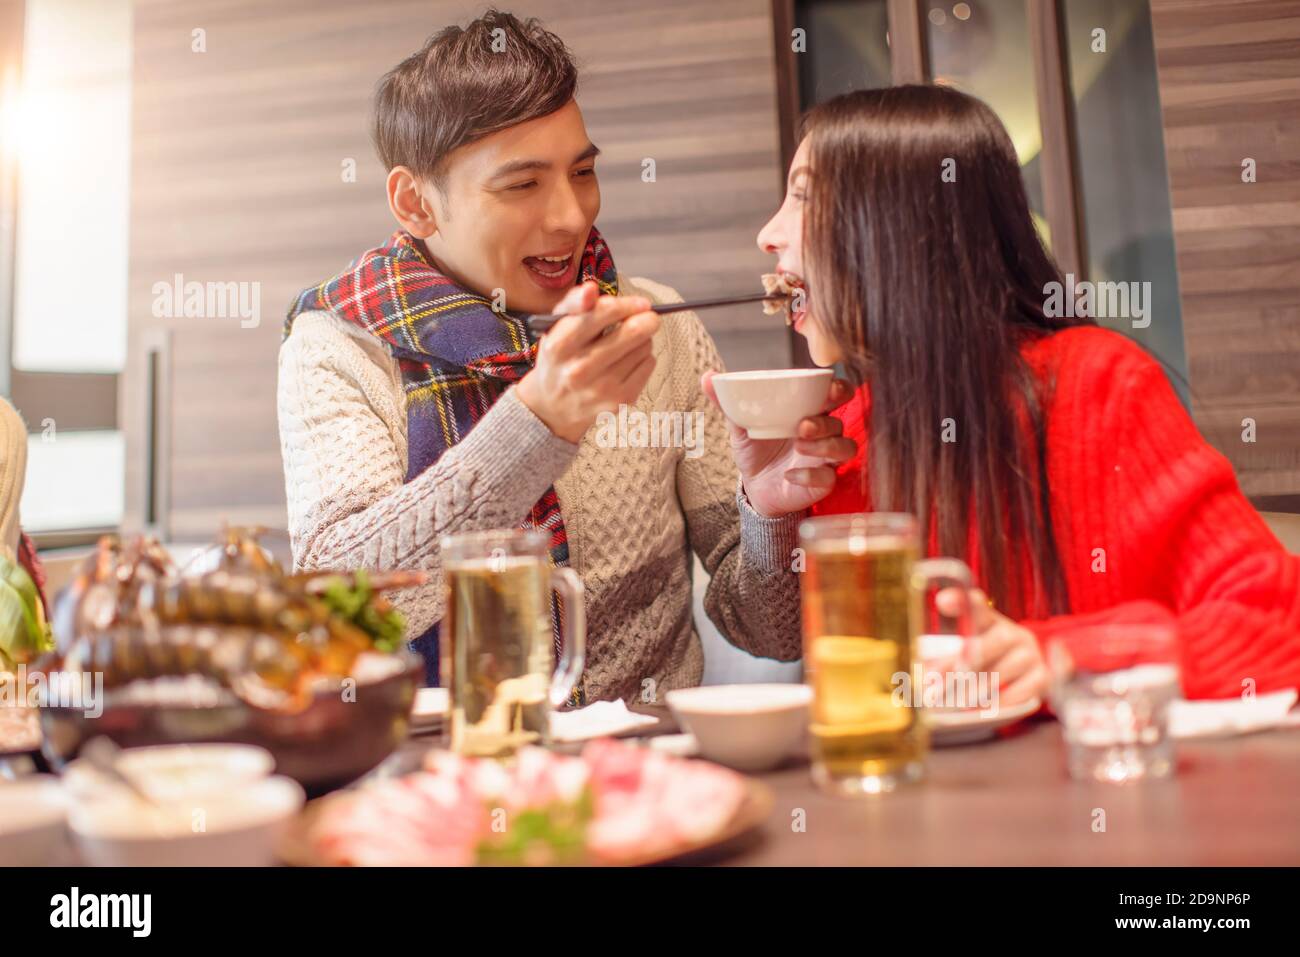 Le jeune homme nourrit sa girfriend au restaurant Banque D'Images